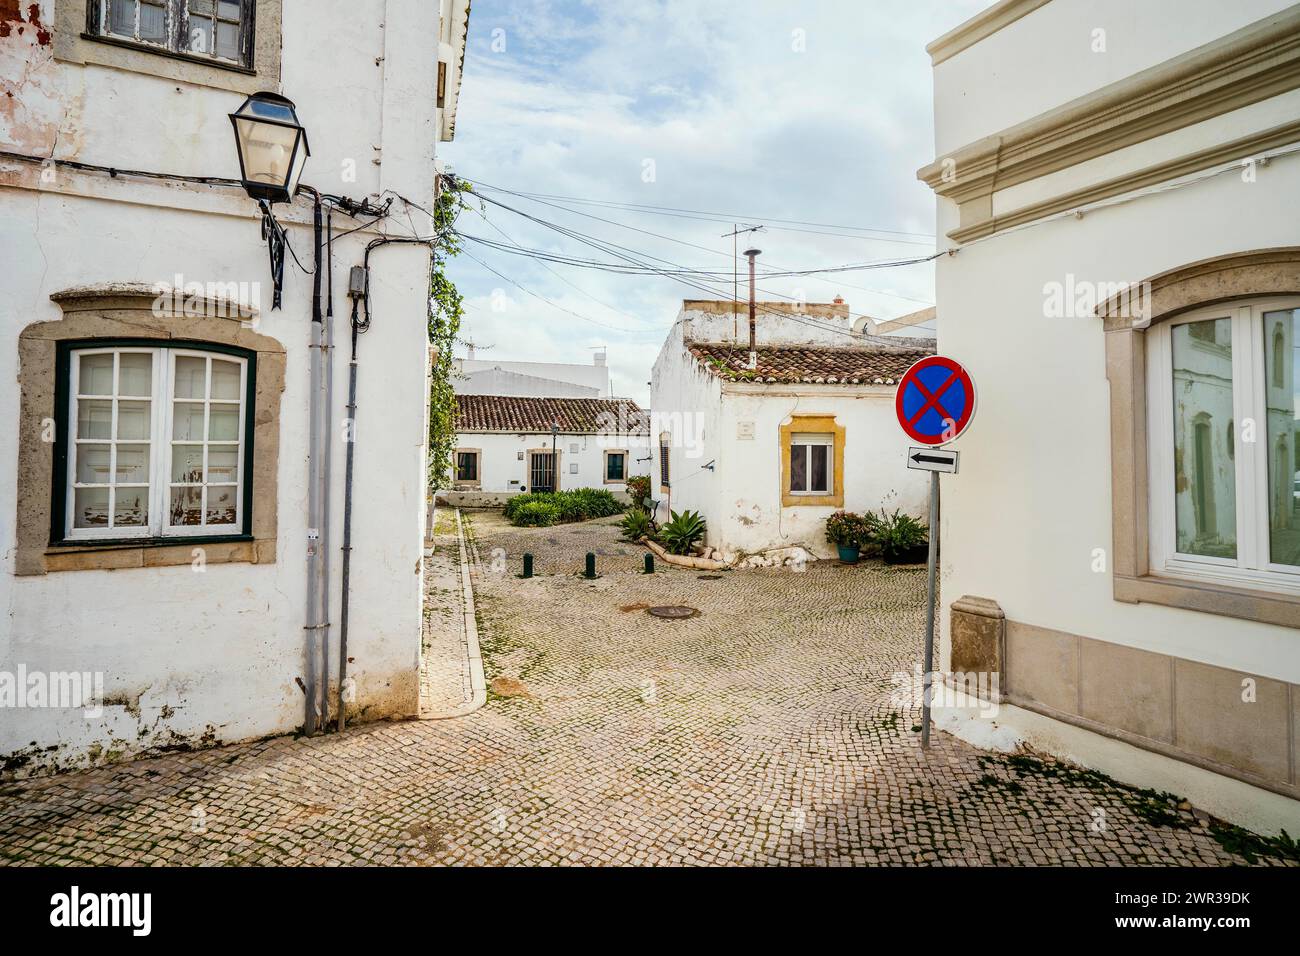 Quartier résidentiel à l'architecture traditionnelle portugaise à Sao bras de Alportel, Algarve, Portugal Banque D'Images